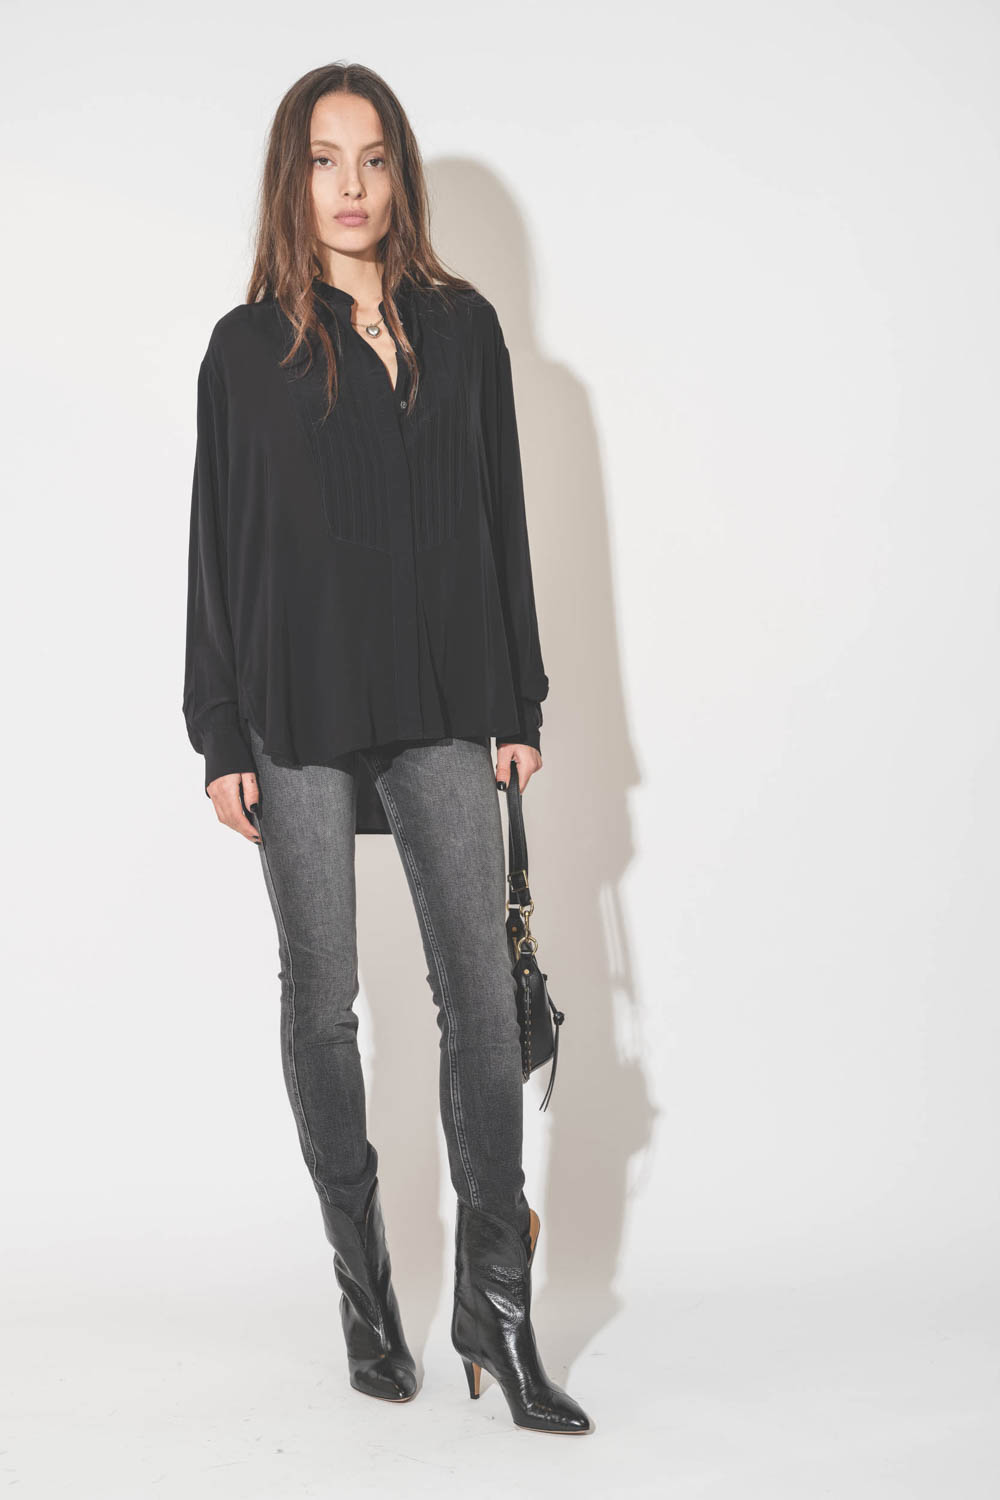 Chemise forme liquette manches longues en viscose noir Amel Isabel Marant Etoile. Porté avec un jean Slim gris.